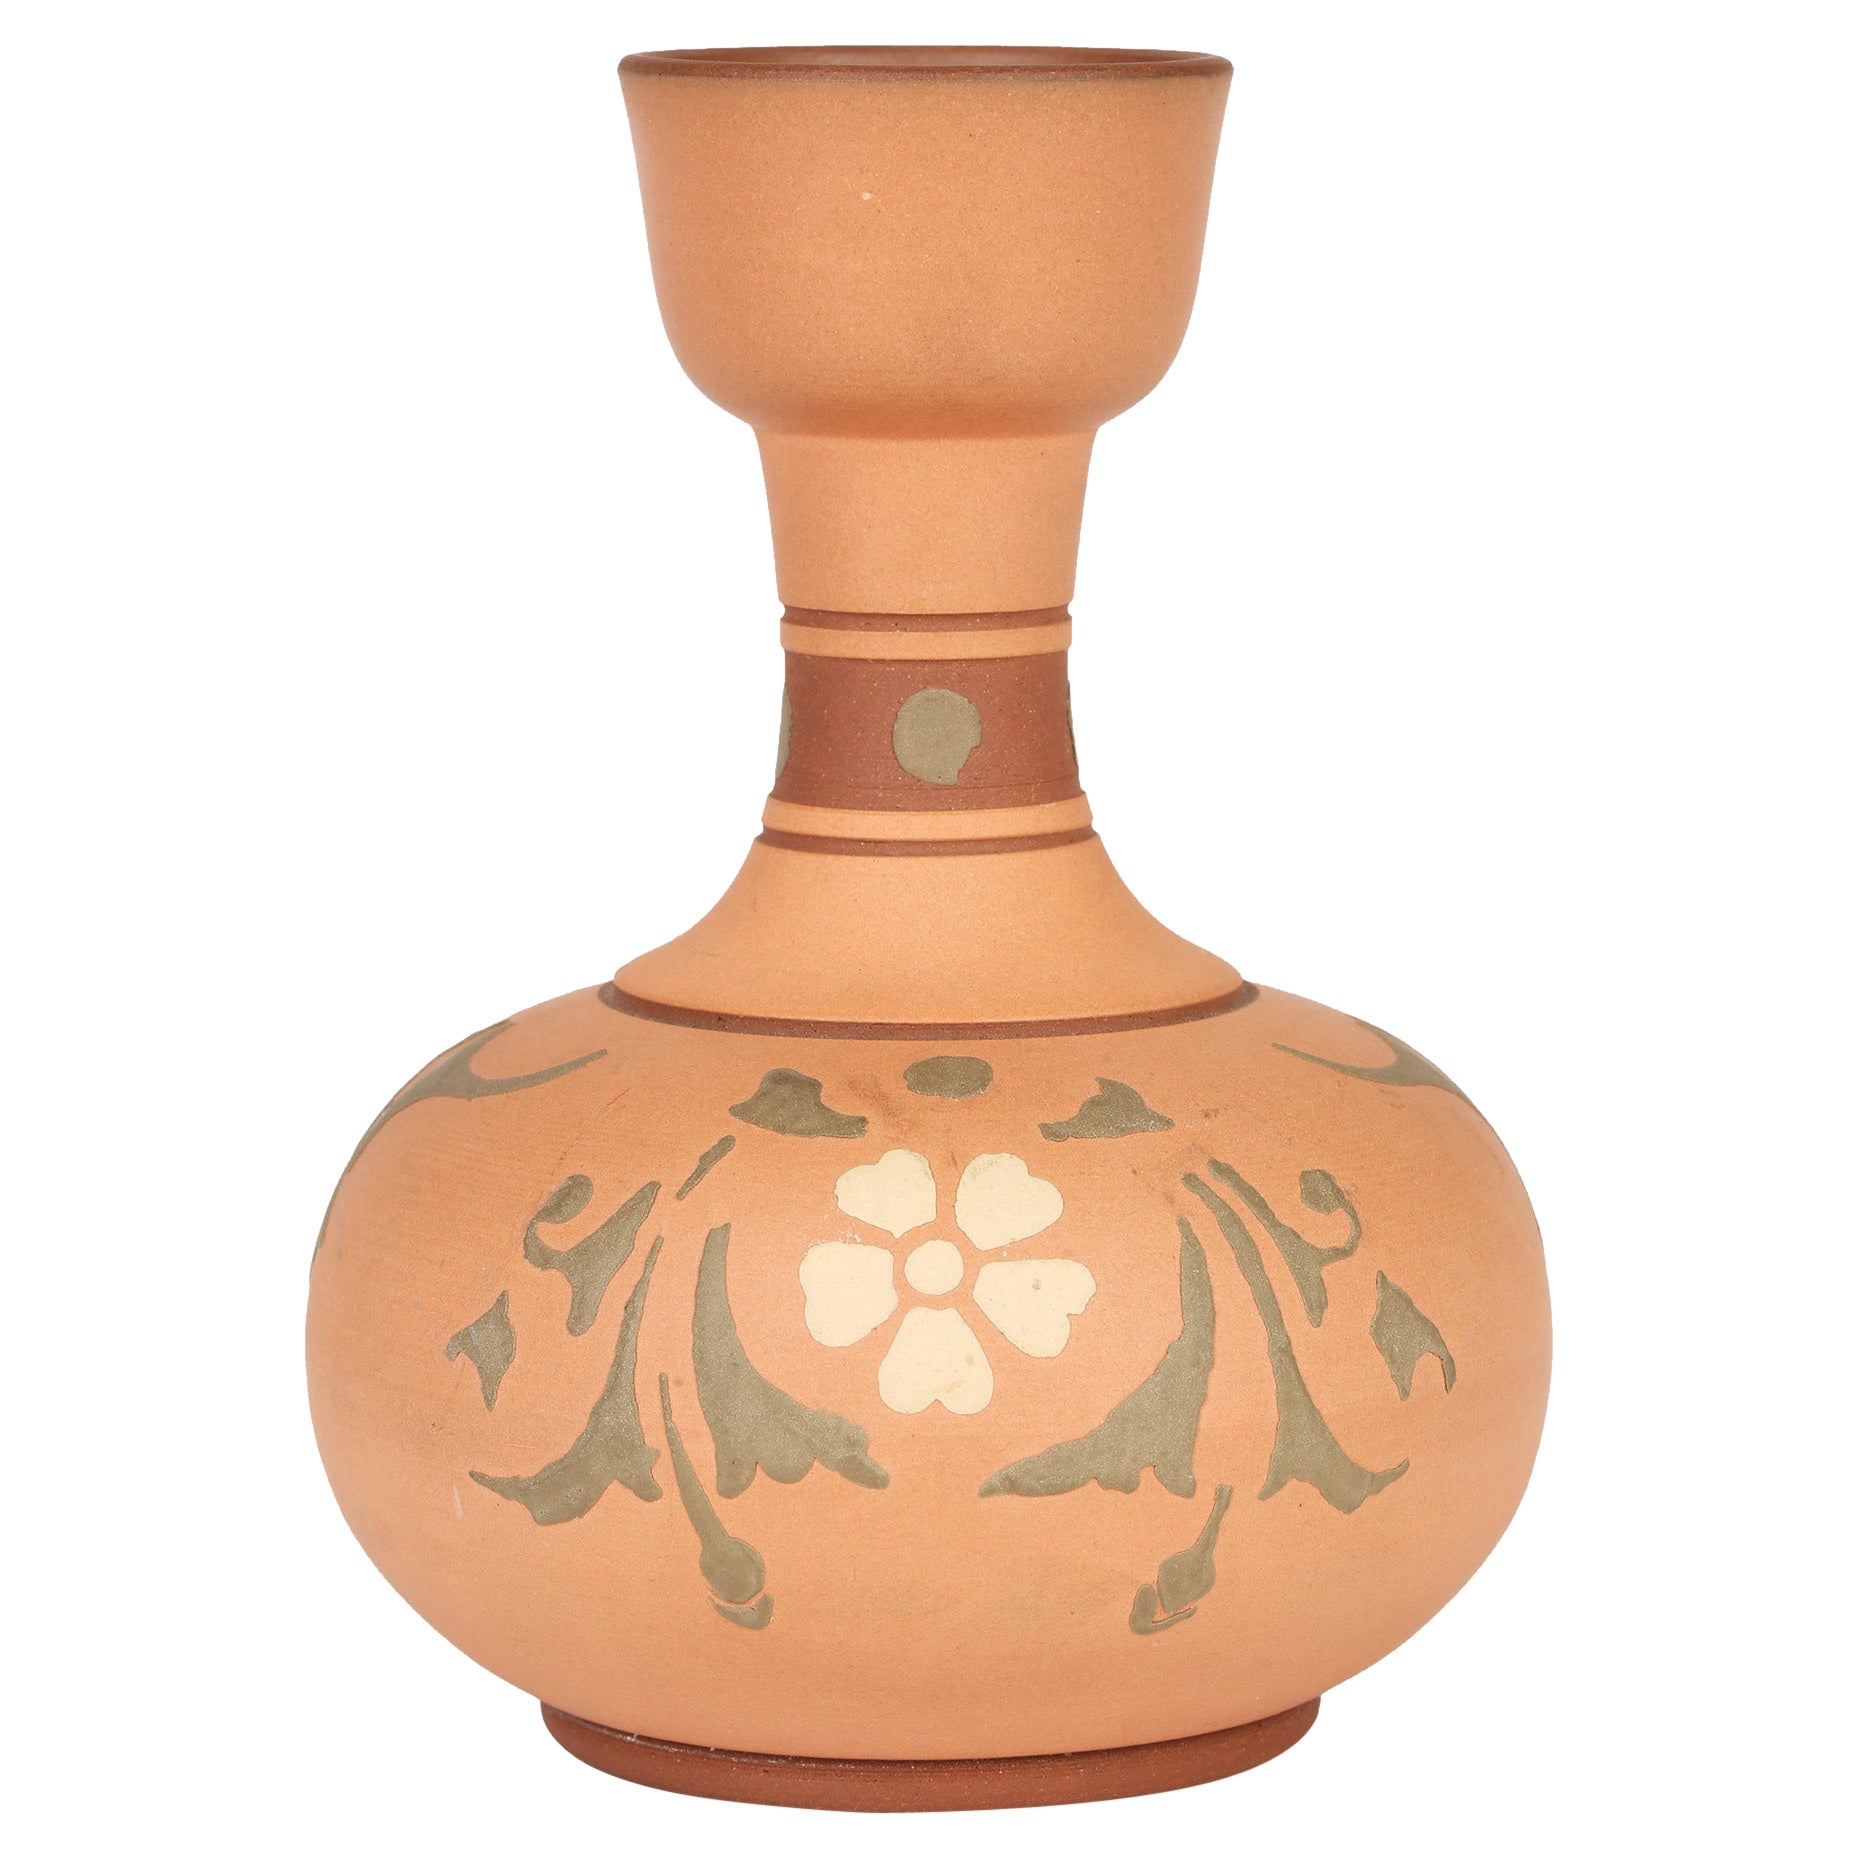 Christopher Dresser Attributed Aesthetic Movement Terracotta Vase